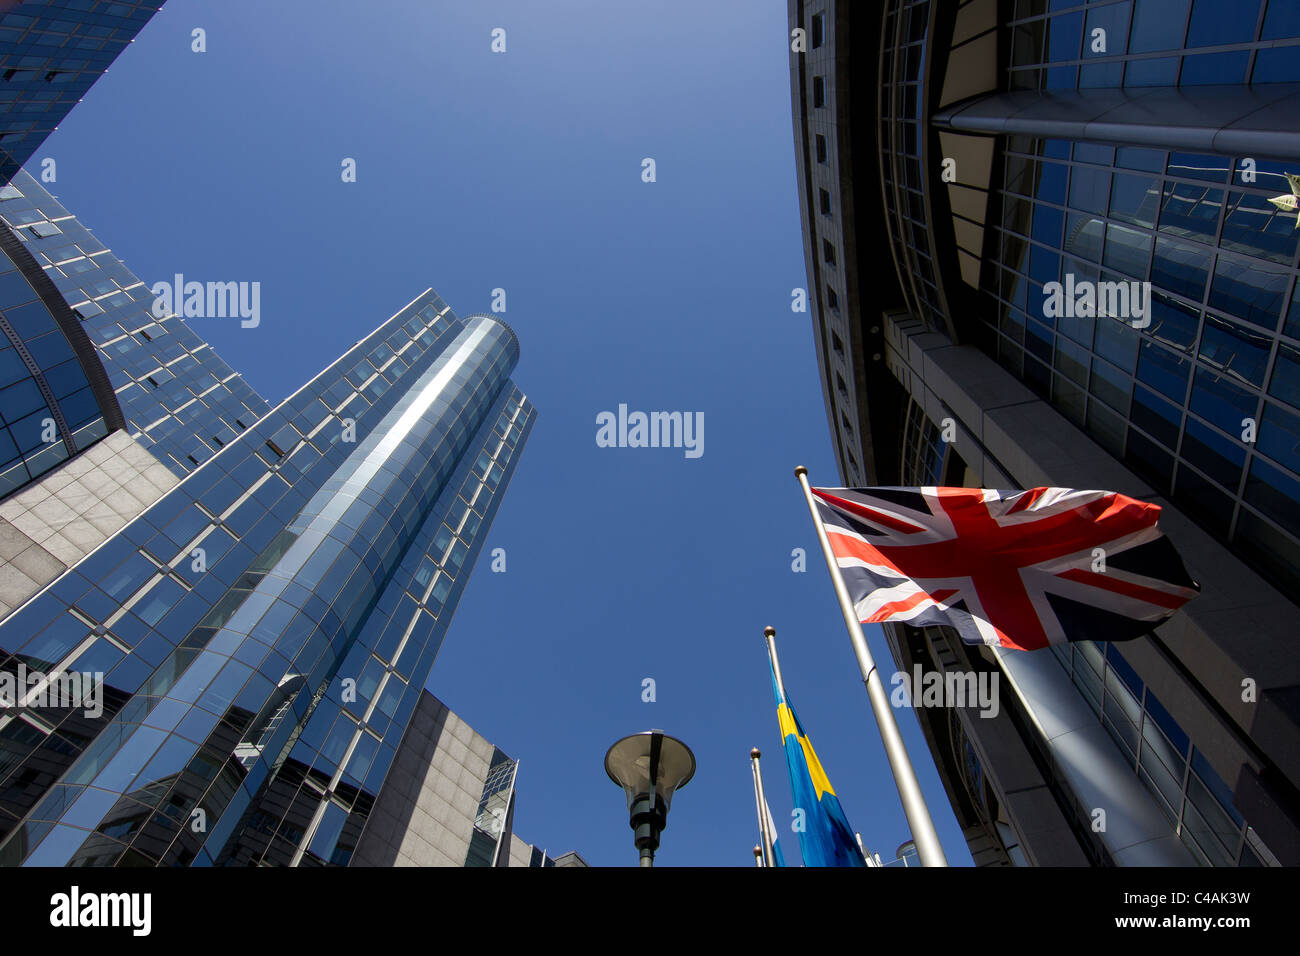 Bâtiment du Parlement européen Bruxelles british union jack drapeau britannique Banque D'Images